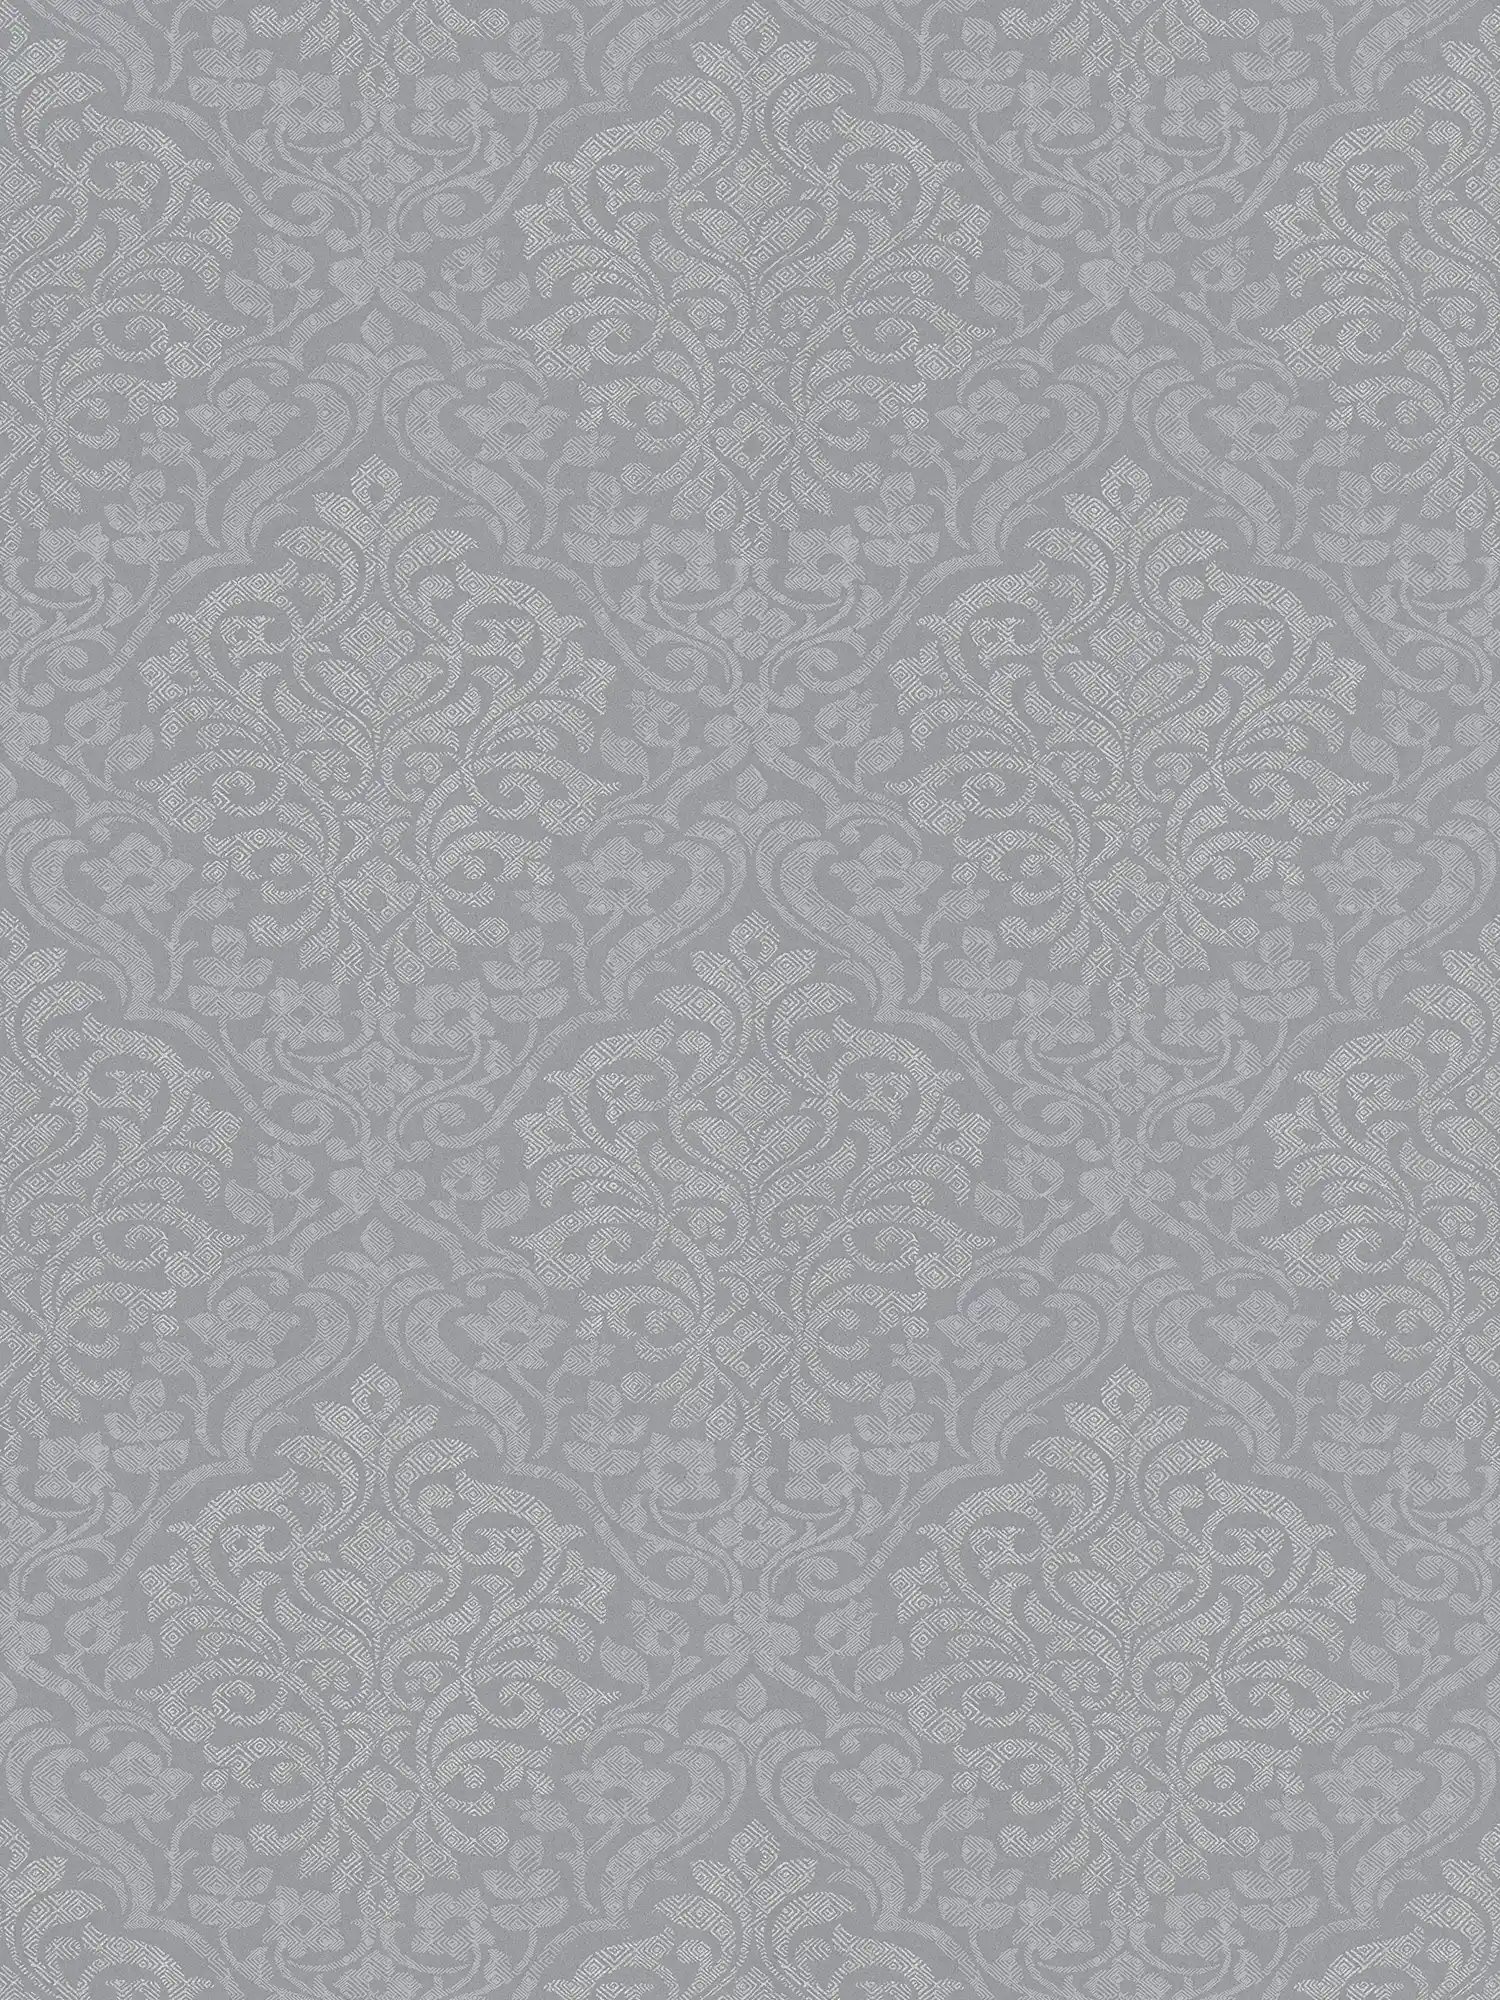 Papel pintado floral ornamental en estilo étnico - gris, plata
